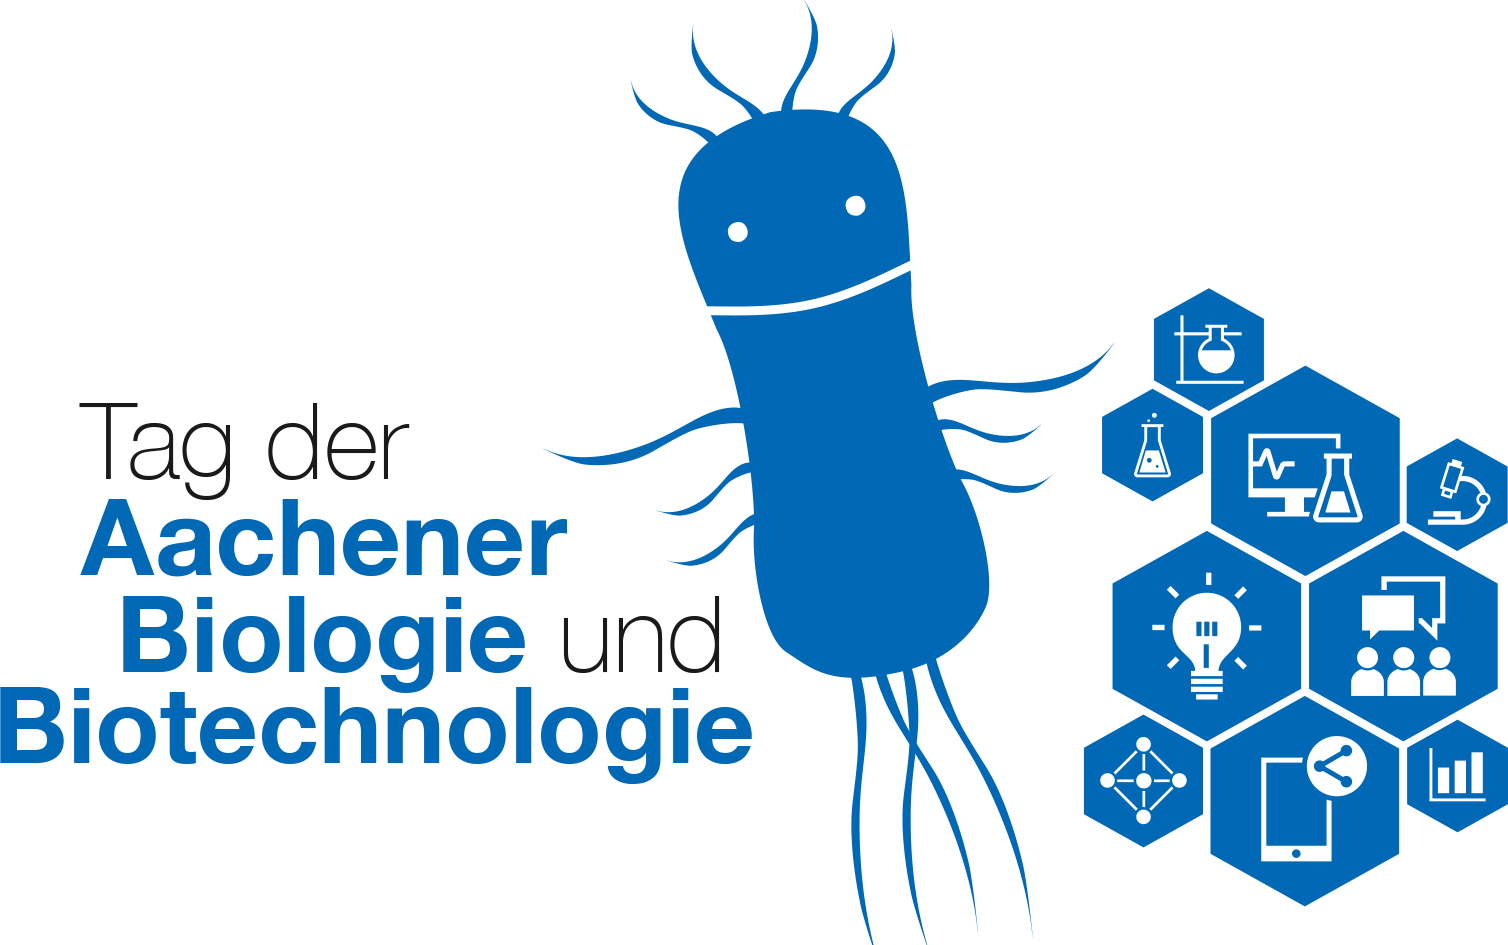 Tag der Aachener Biologie und Biotechnologie 2021